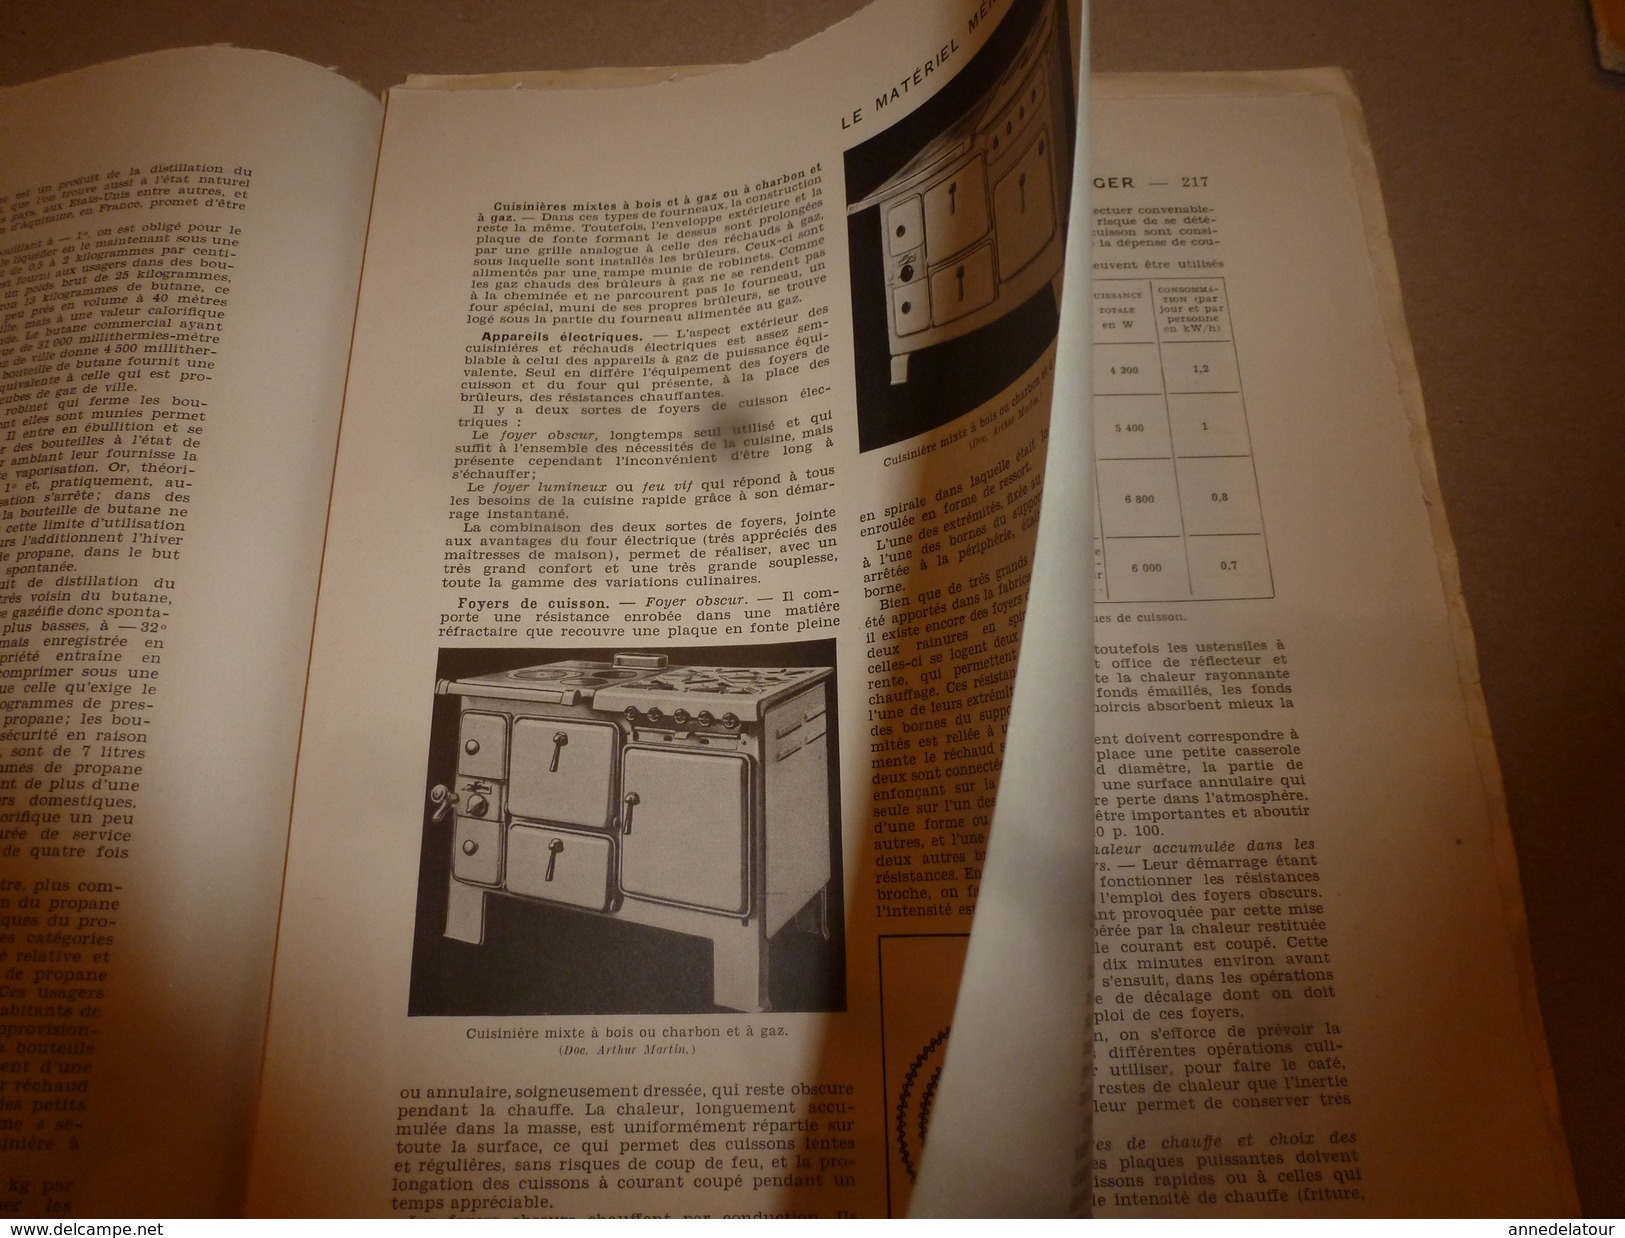 1950 ENCYCLOPEDIE FAMILIALE LAROUSSE ->Matériel ménager (très important documentaire texte,photos et dessins (2e partie)